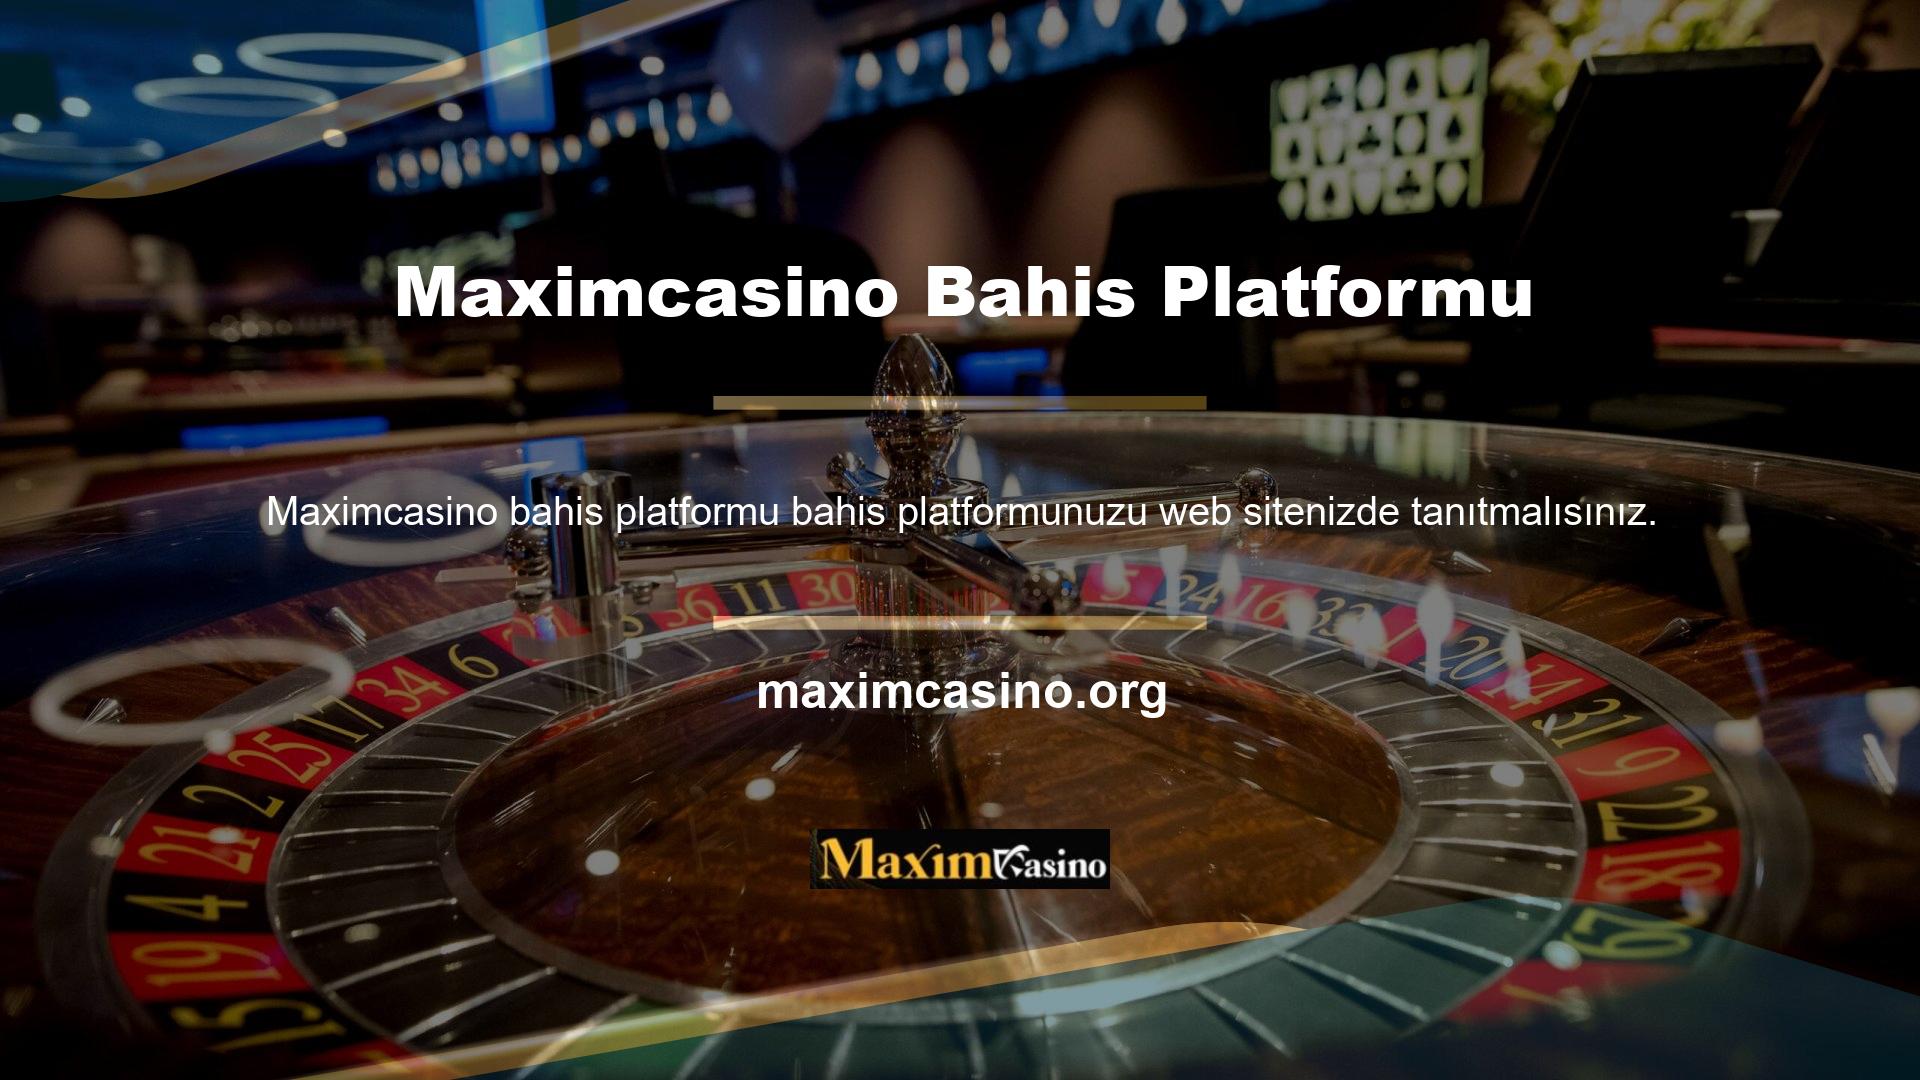 Web siteniz Türkiye’nin en iyi casino sitesi Maximcasino casino talep platformuna ne kadar çok kullanıcı trafiği gönderirse, o kadar fazla gelir elde edebilirsiniz